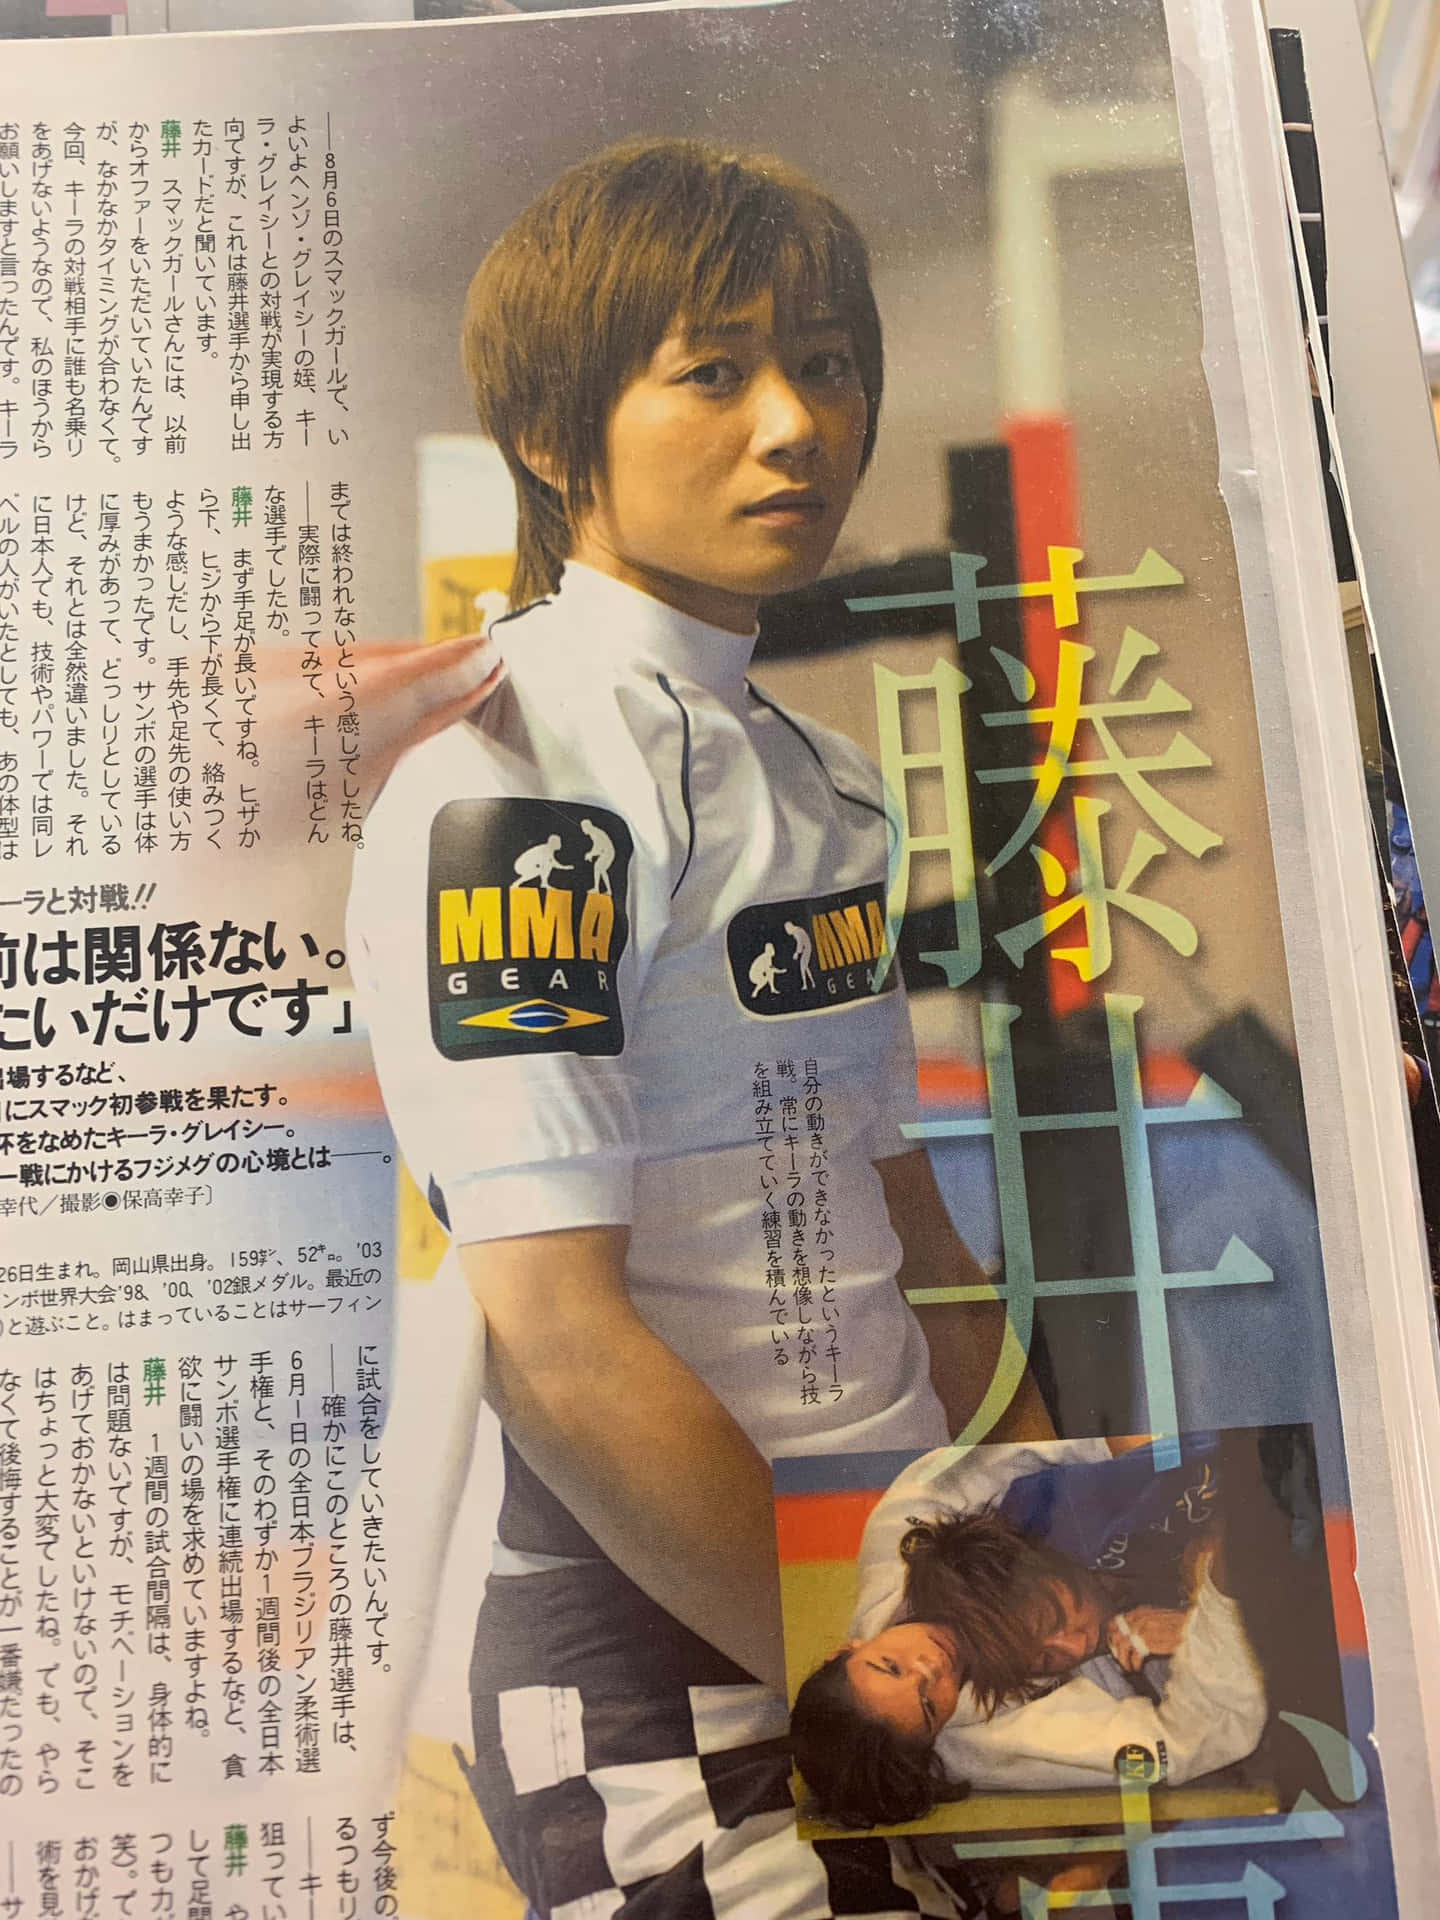 Japansk mikse kampsportudøver Megumi Fujii nyhedsartikel Wallpaper